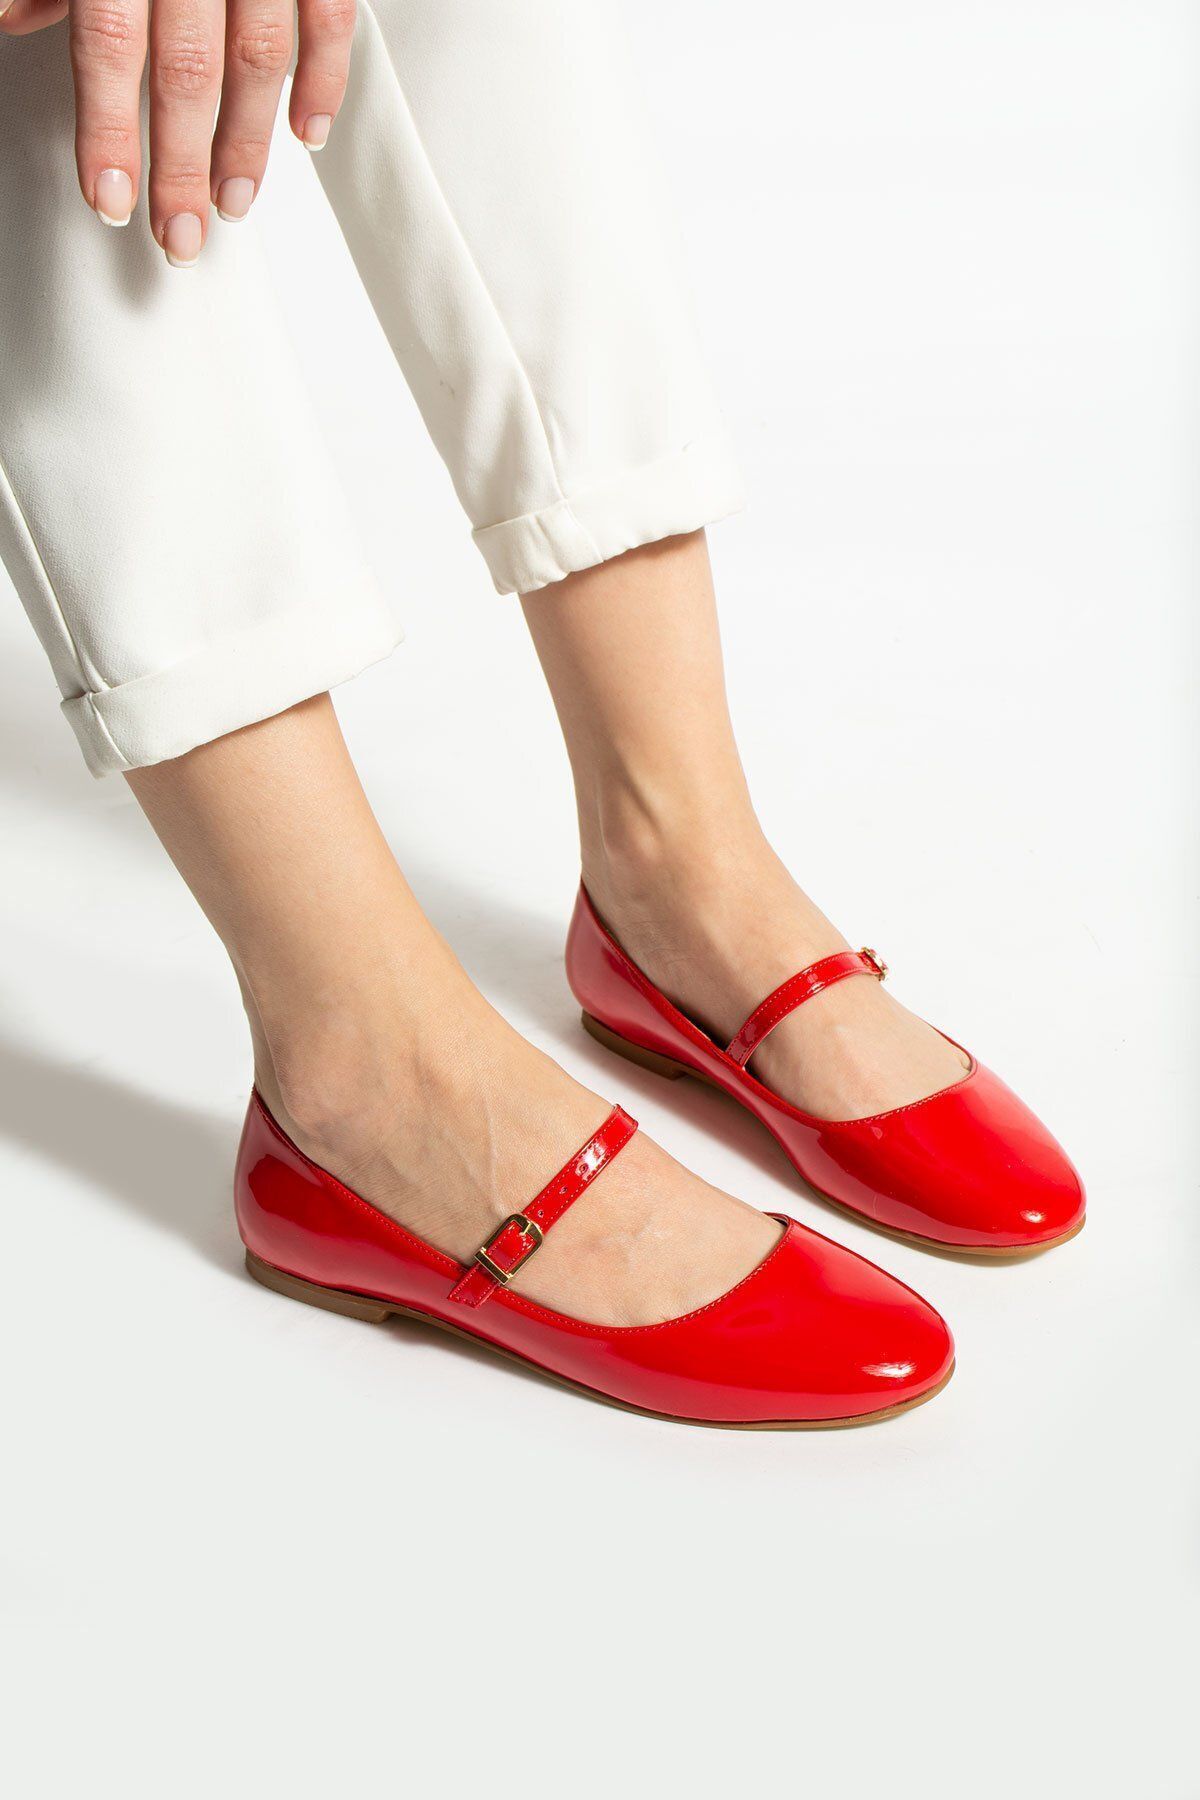 Tulin Shoes Astana Toka Detay Kadın Babet Kırmızı